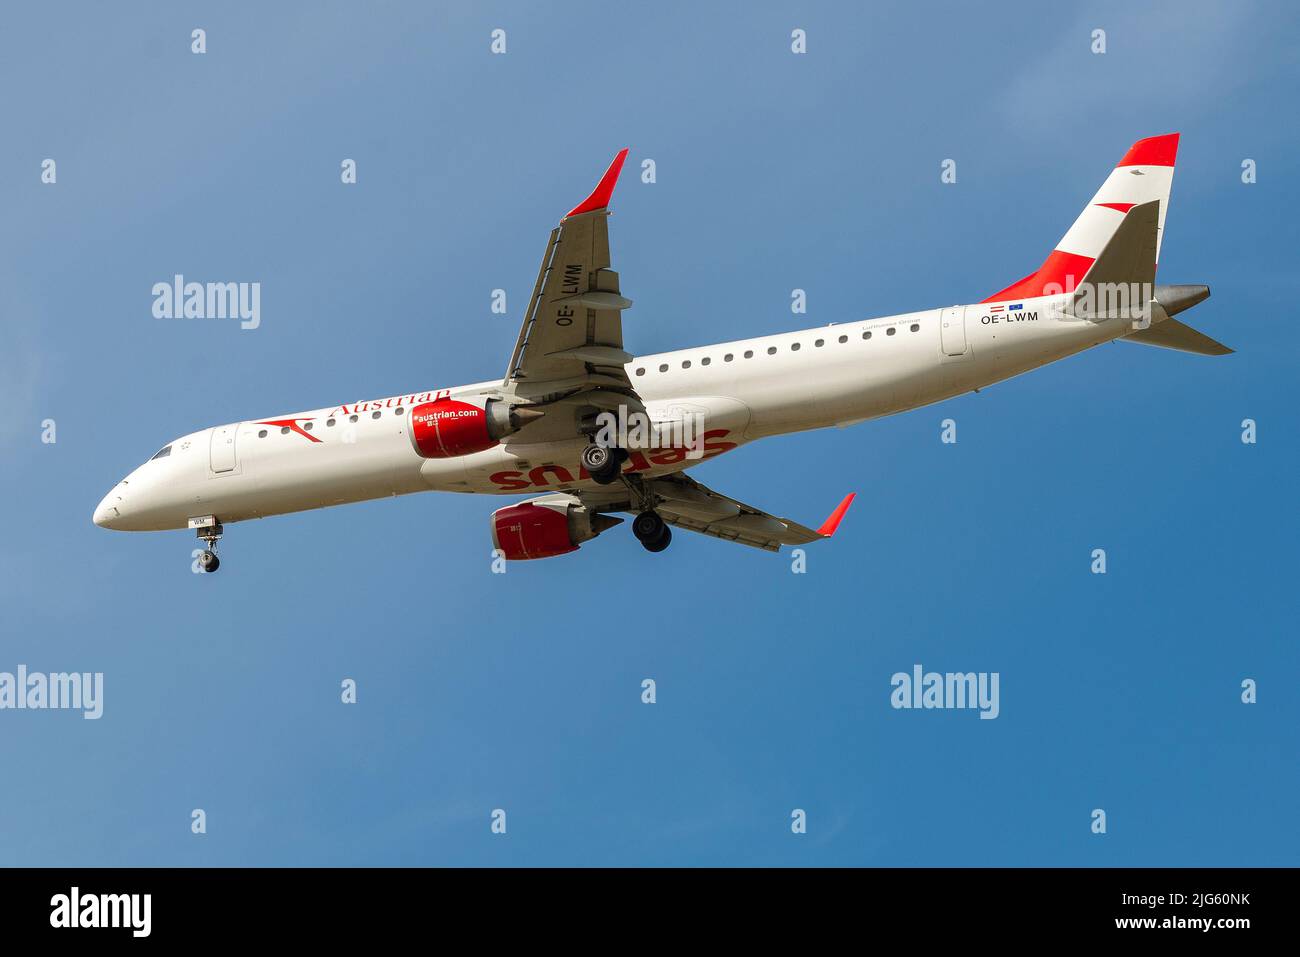 SANKT PETERSBURG, RUSSLAND - 08. MAI 2018: Embraer ERJ-195LR (OE-LWM) der Austrian Airlines auf dem Gleitschirm an einem sonnigen Tag Stockfoto